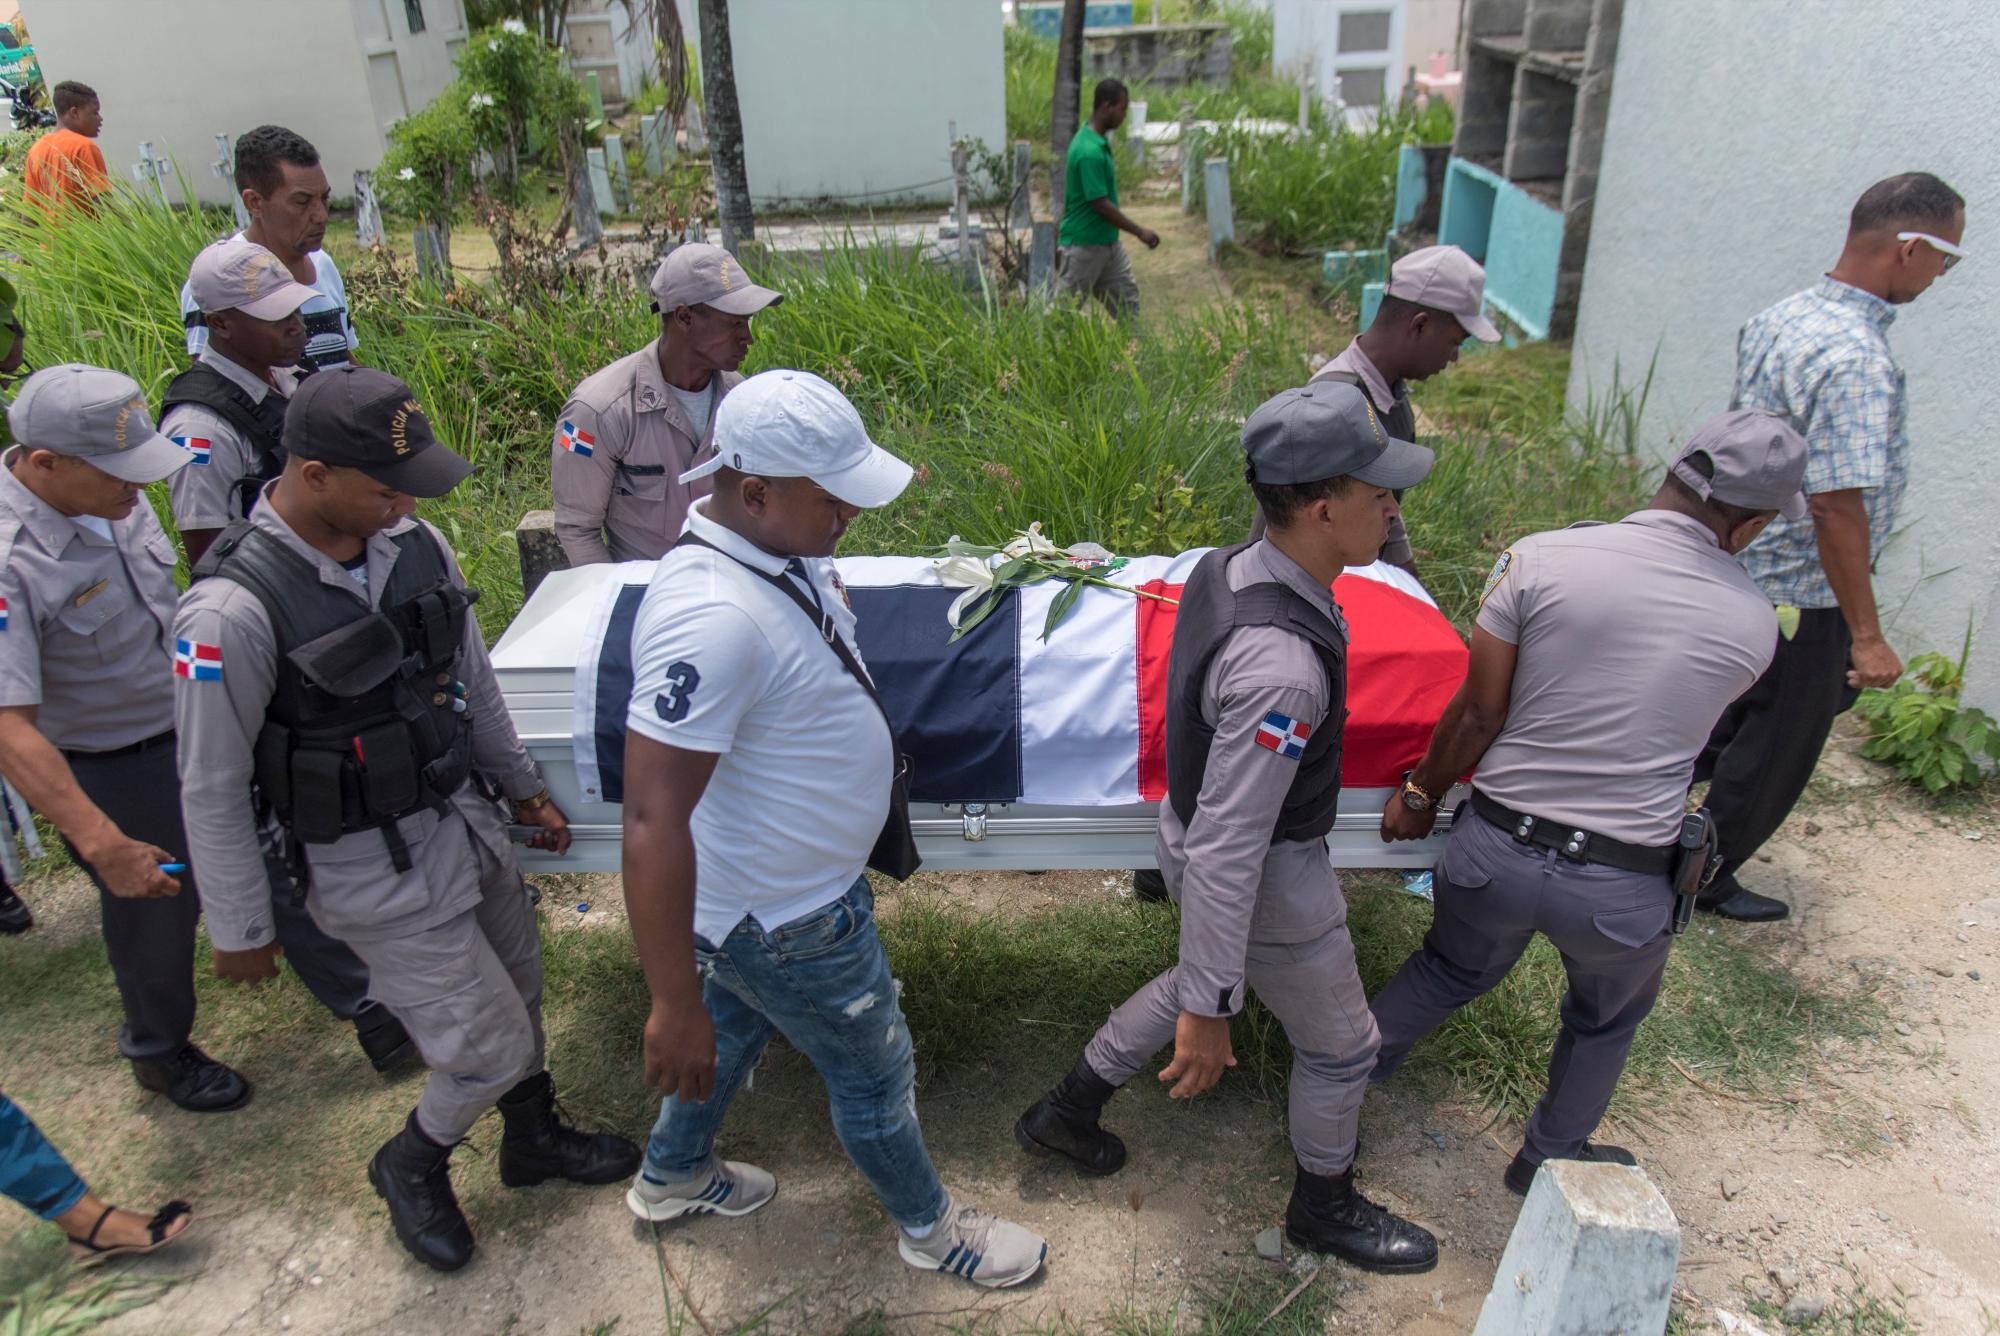 Los restos del cabo de la Policía Nacional Chistopel Turbi Ruíz, de 28 años, ultimado la noche del martes en Villa Mella para quitarle su arma de reglamento son llevados al cementerio el jueves 04 de julio de 2019.